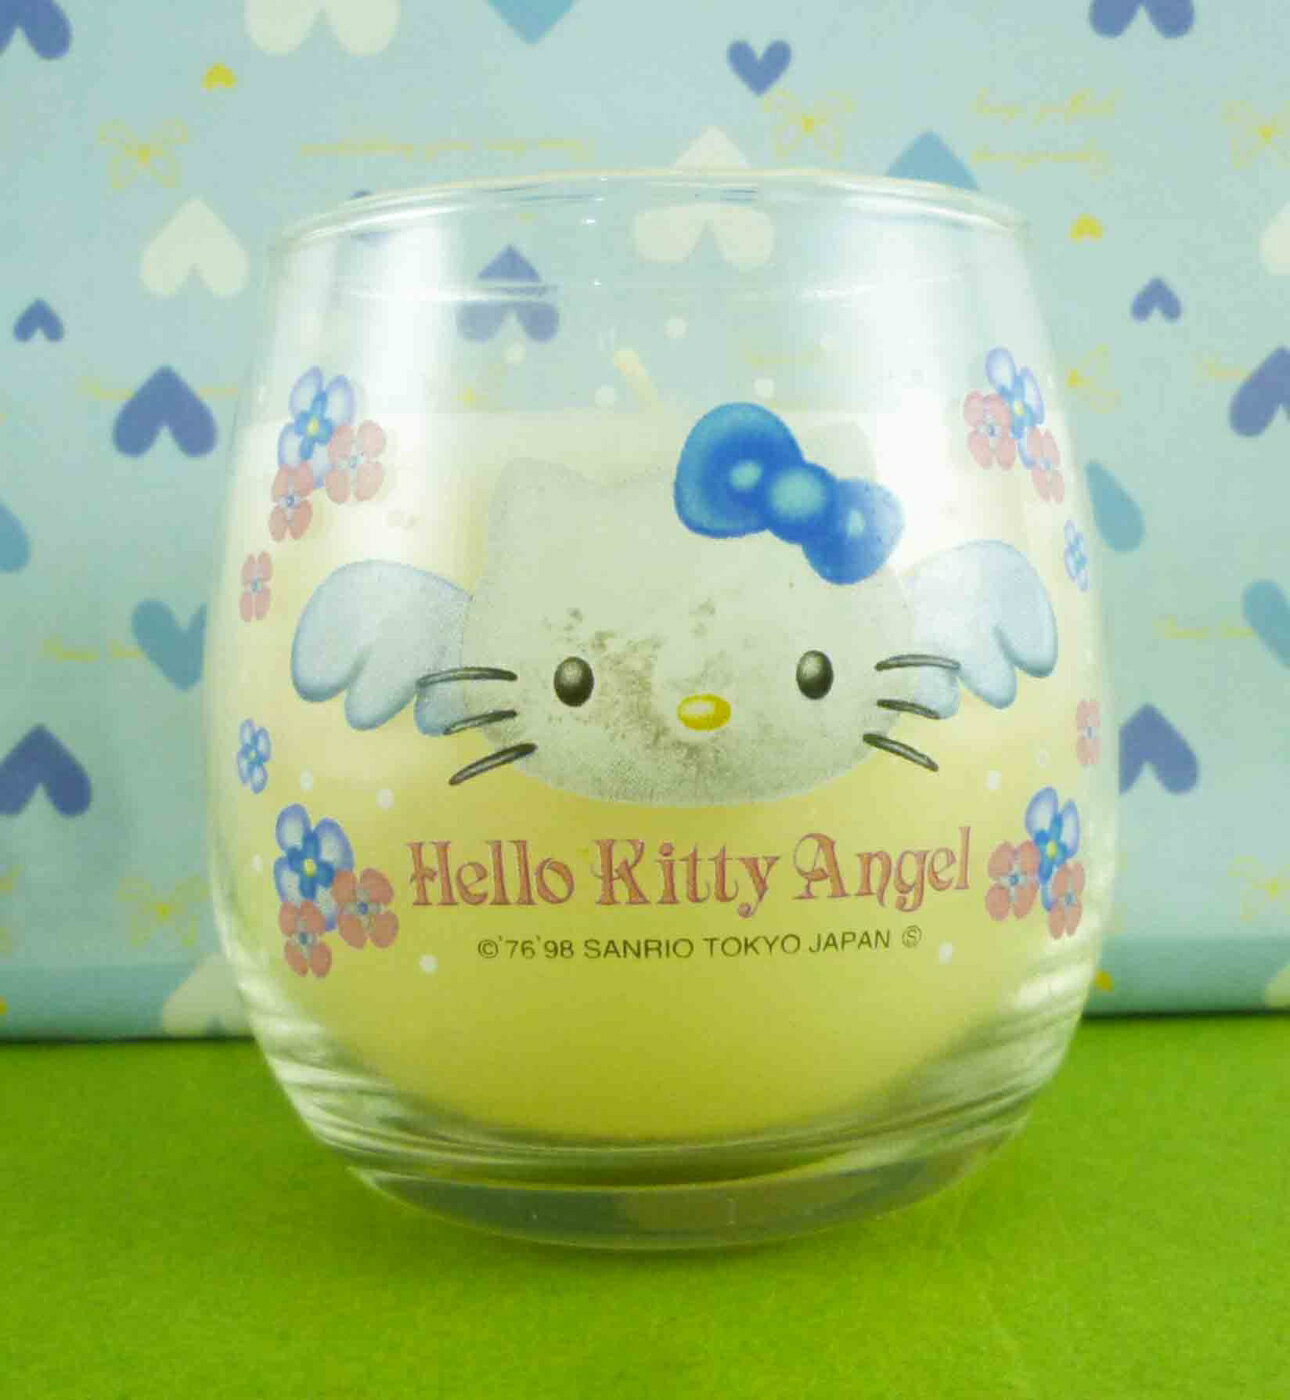 【震撼精品百貨】Hello Kitty 凱蒂貓 蠟燭 天使【共1款】 震撼日式精品百貨